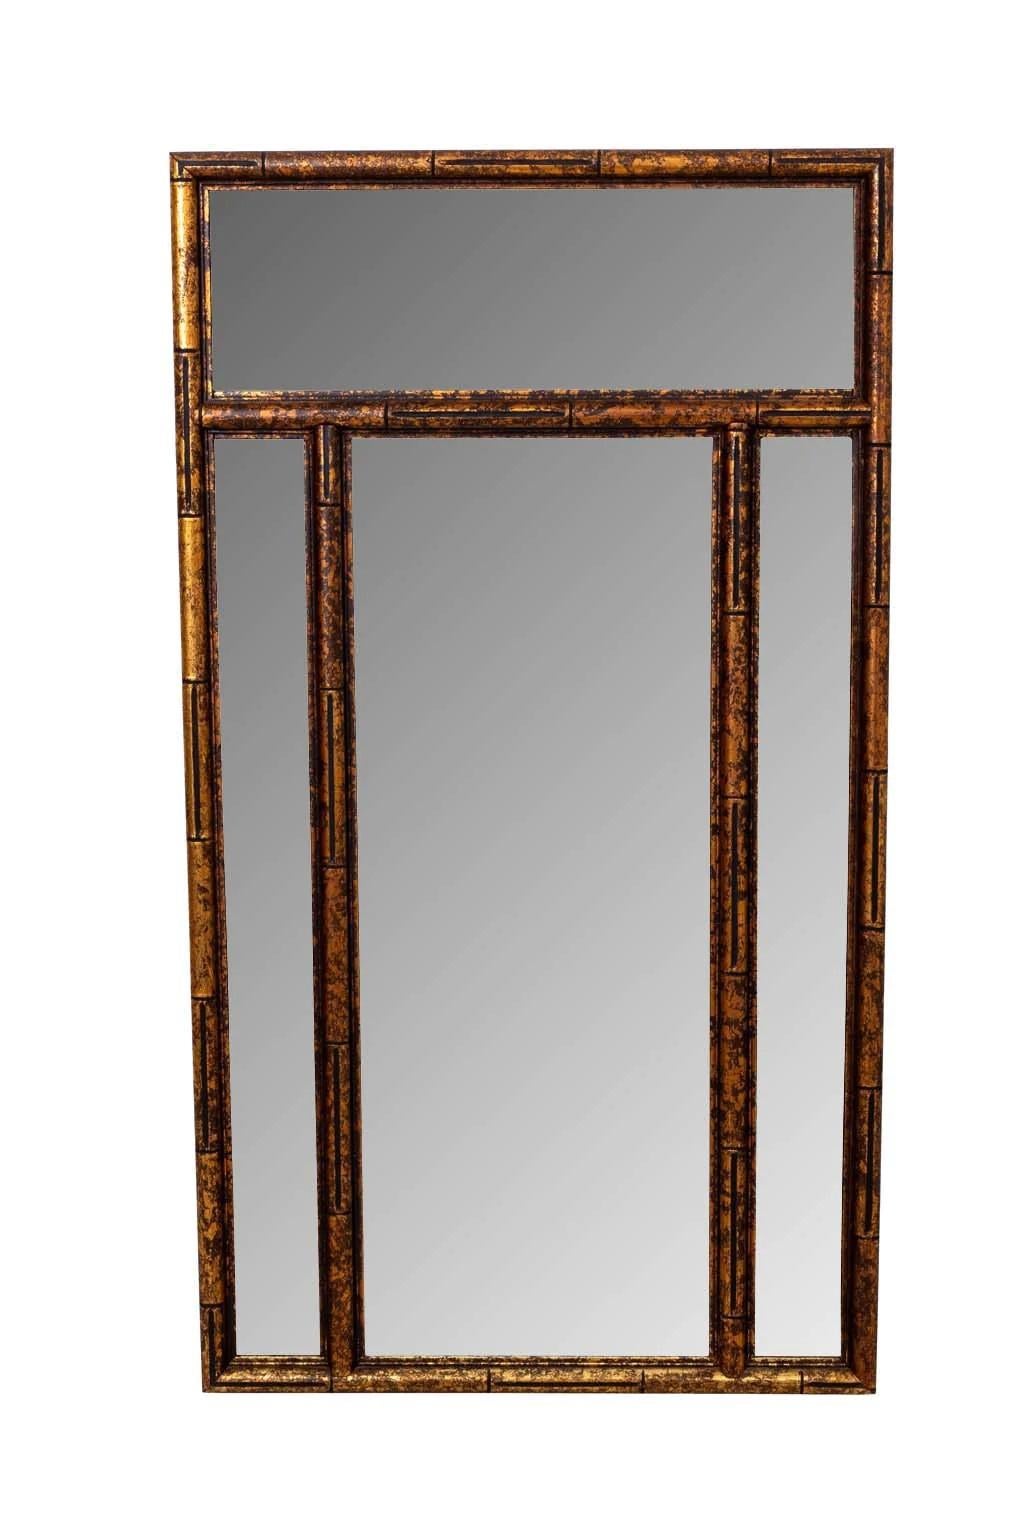 Großer Spiegel aus Bambusimitat mit geräuchertem Spiegelrahmen, schildpattvergoldet. Center klar Spiegel ist 36 